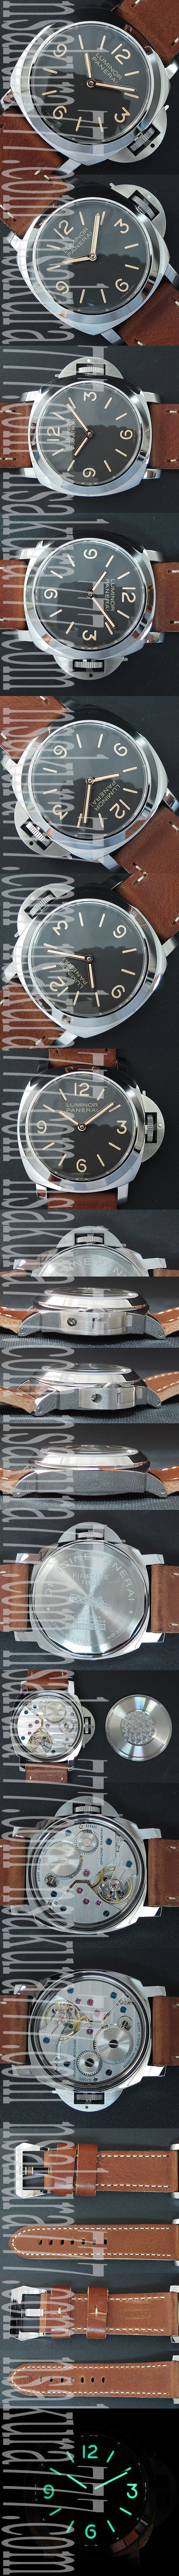 【日本発売】【大人気商品】パネライ ルミノール マリーナ PAM390 メンズ腕時計